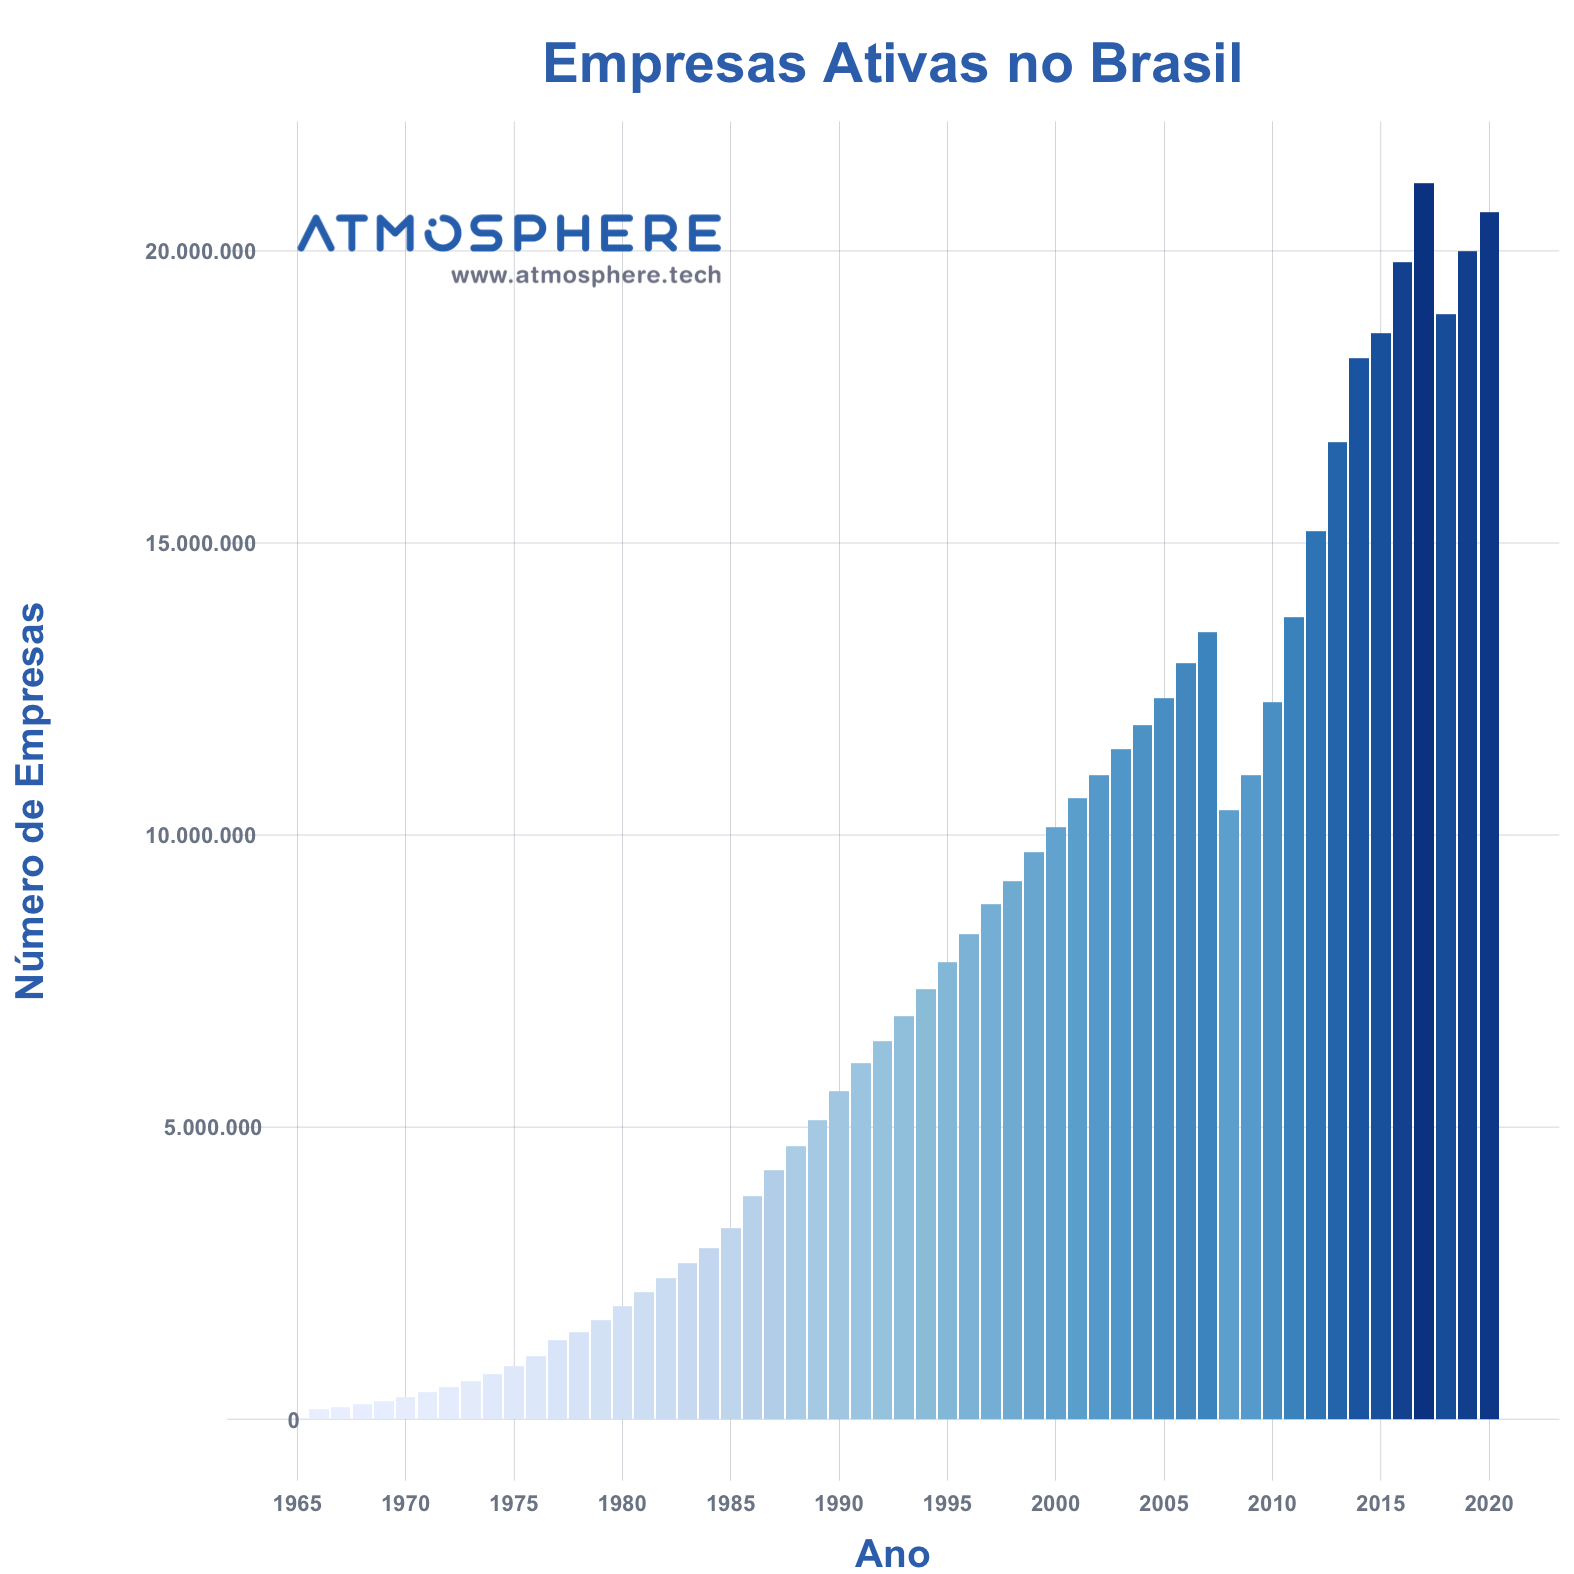 Atmosphere Empresas Ativas por Ano no Brasil